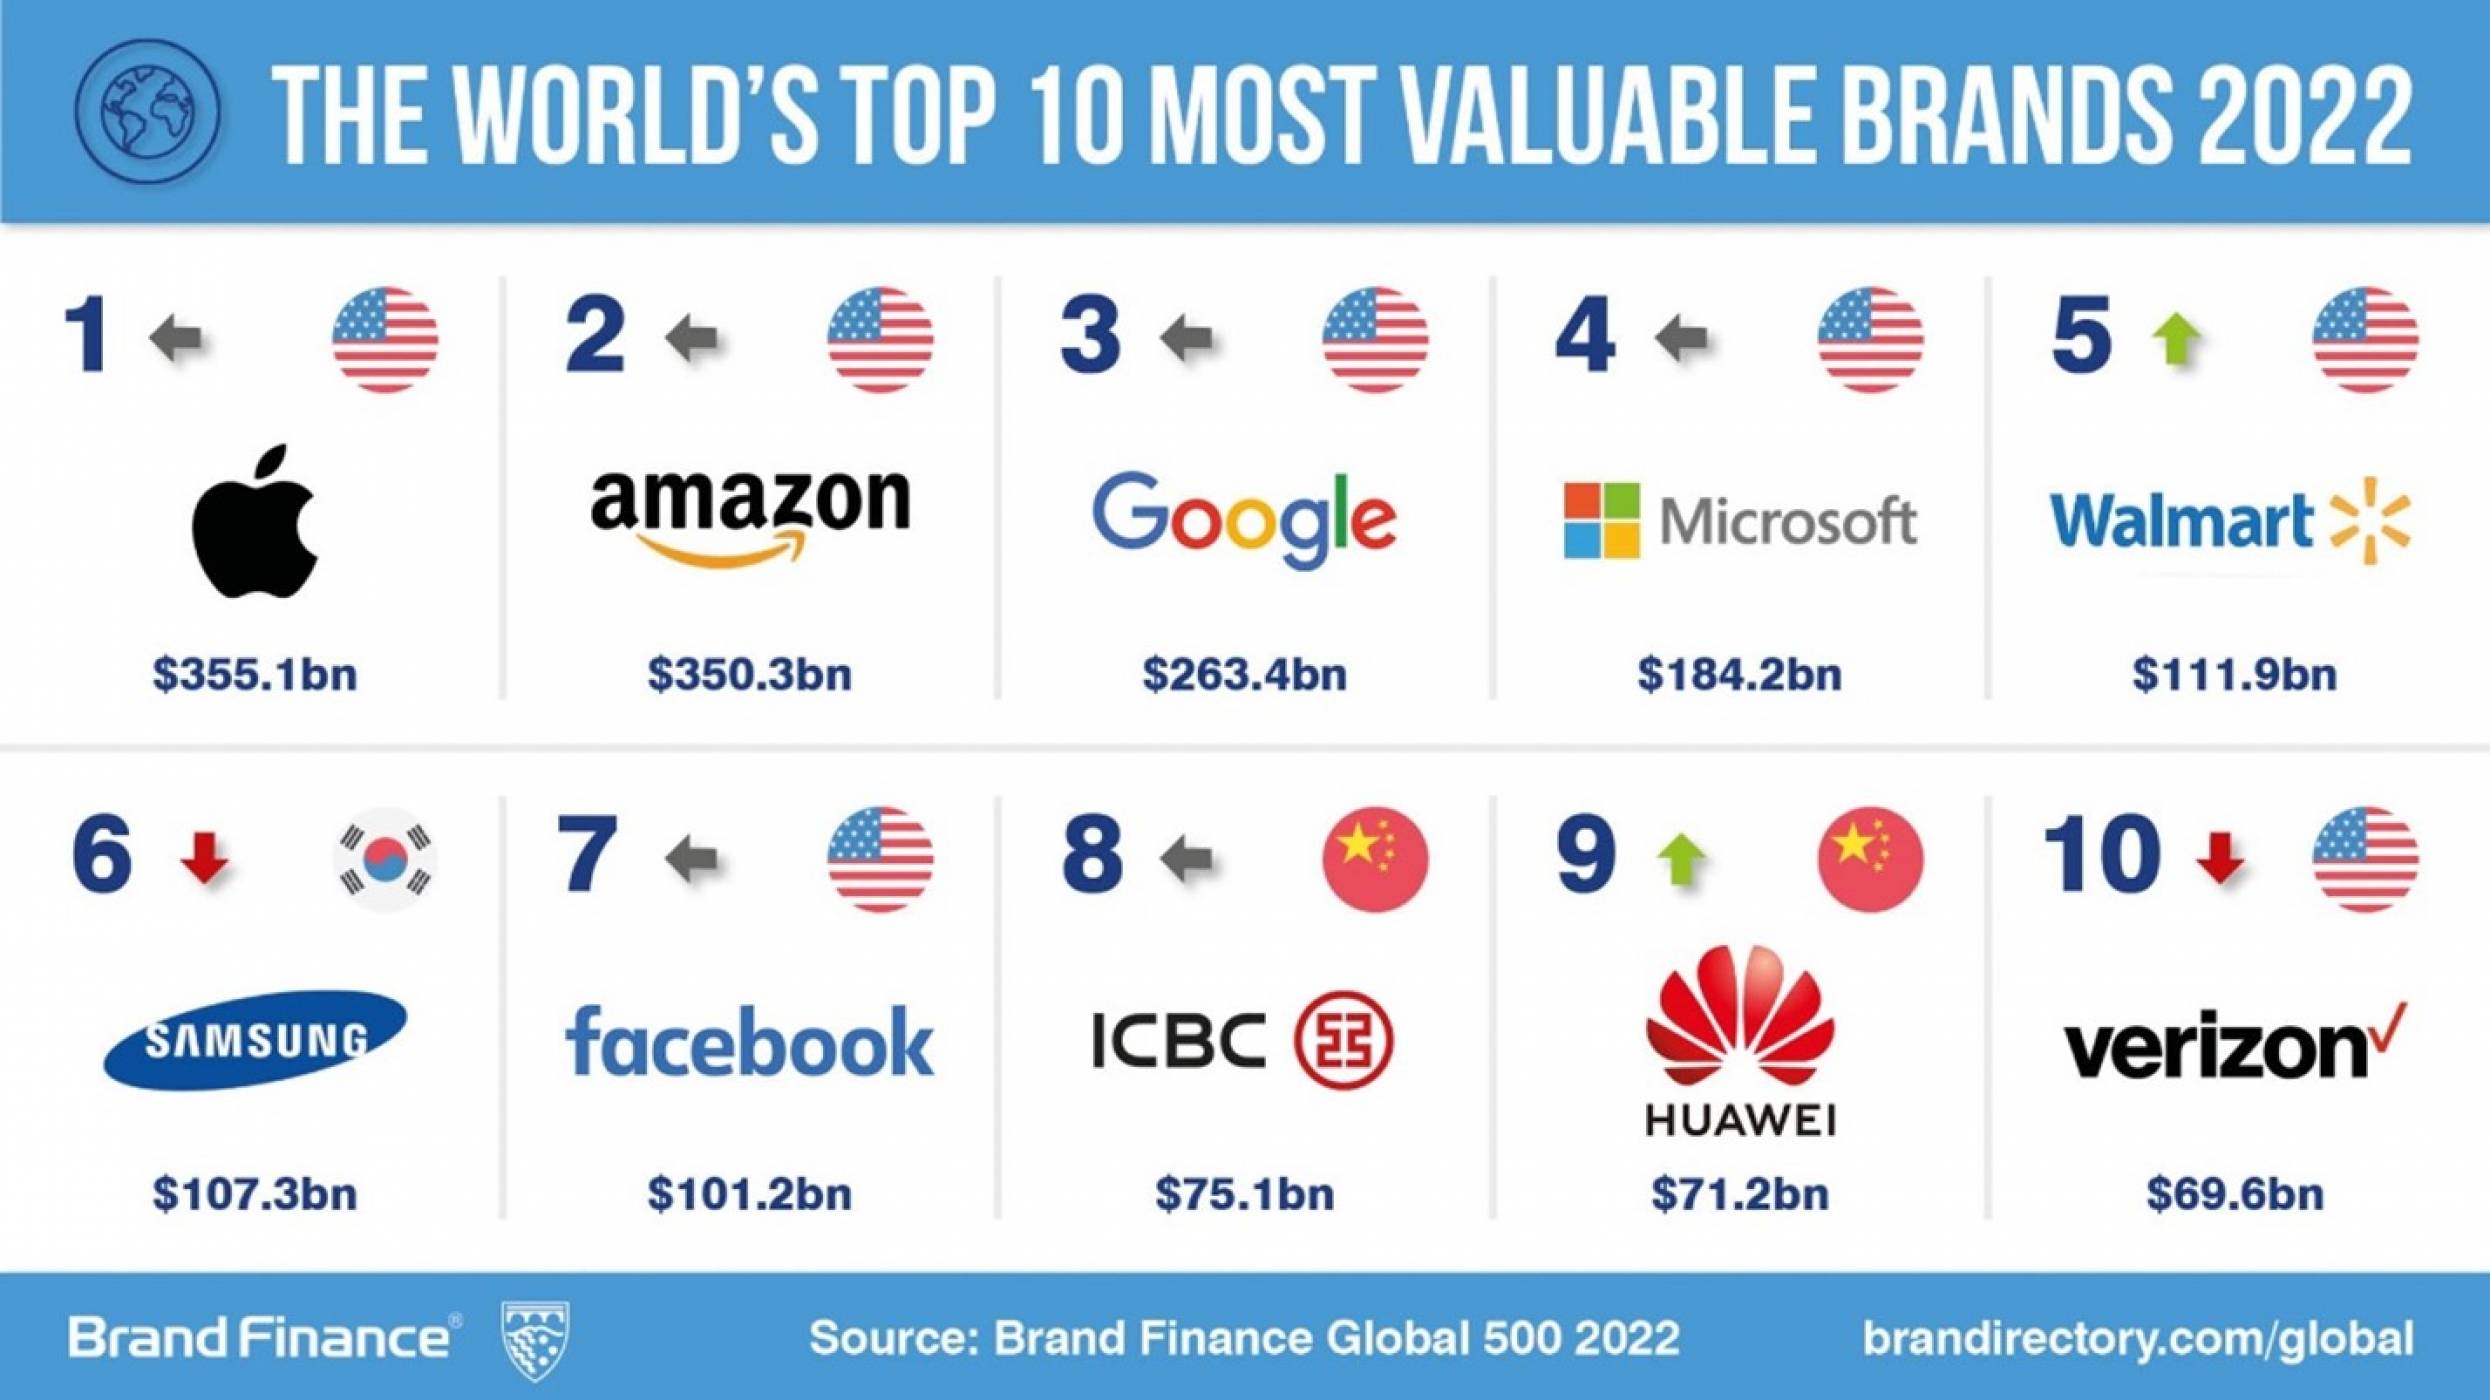 Huawei се класира на 9-то място в Топ 10 на най-ценните марки според Brand Finance за 2022 г.